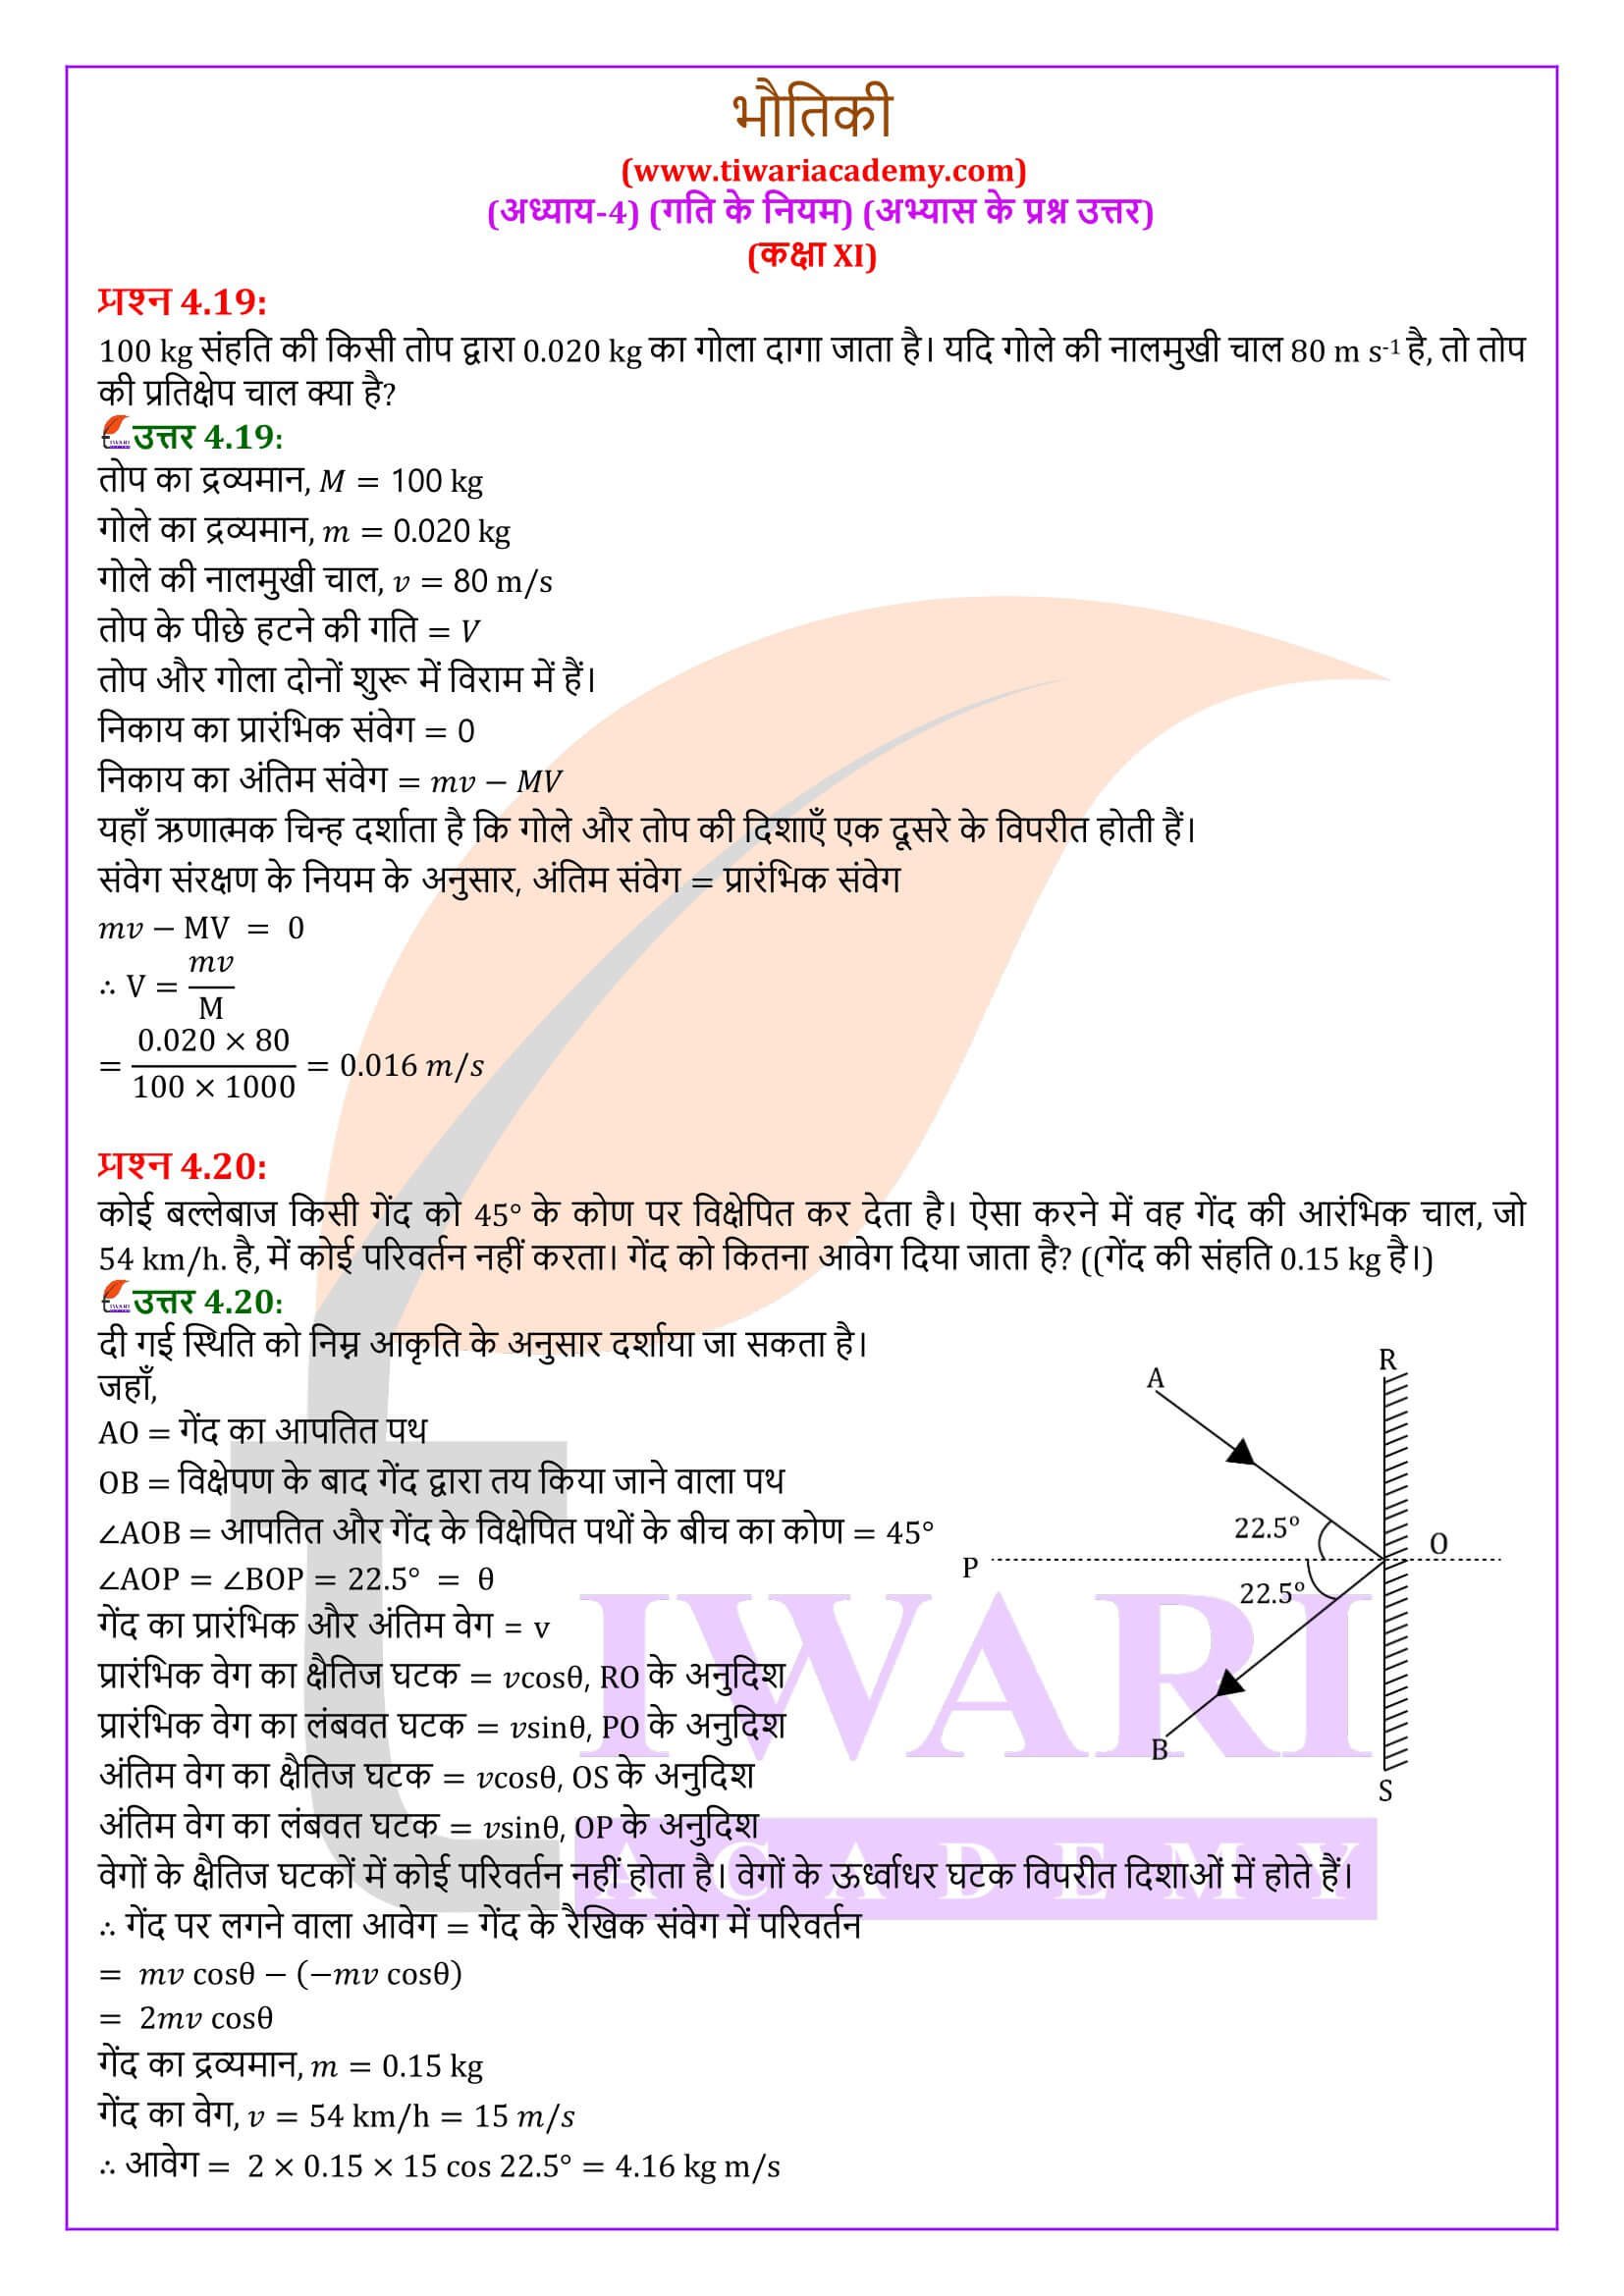 कक्षा 11 भौतिकी अध्याय 4 के हल हिंदी में